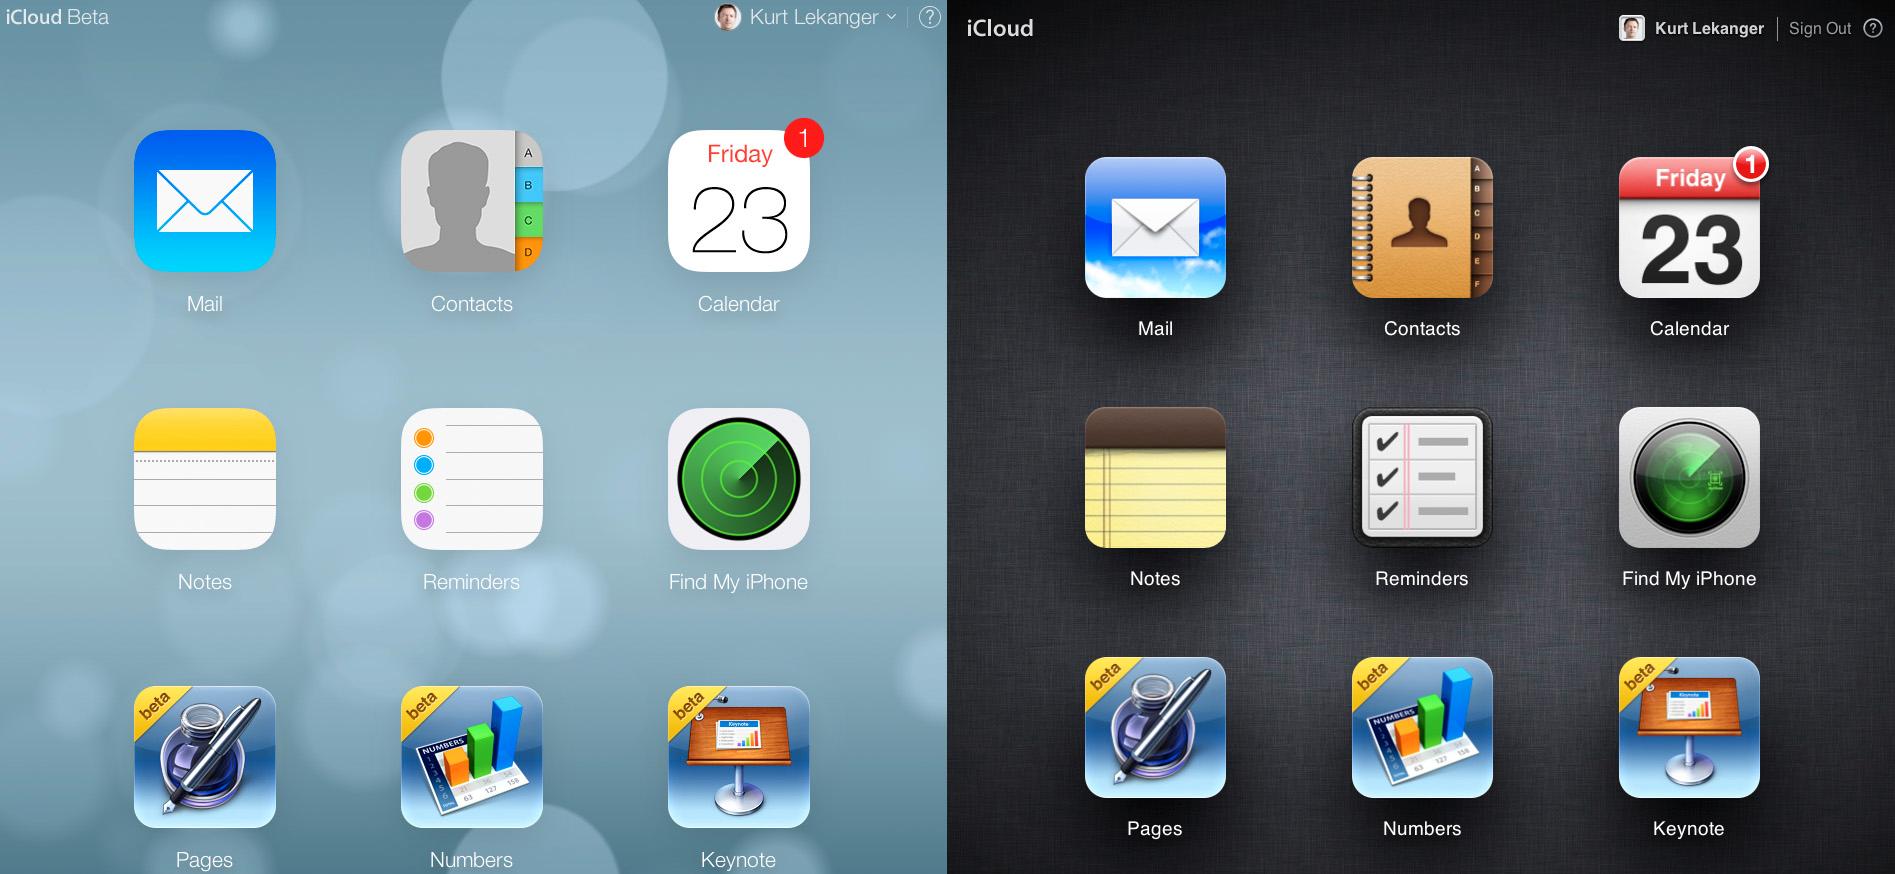 Slik ser den nye og den gamle versjonen av iCloud ut ved siden av hverandre.